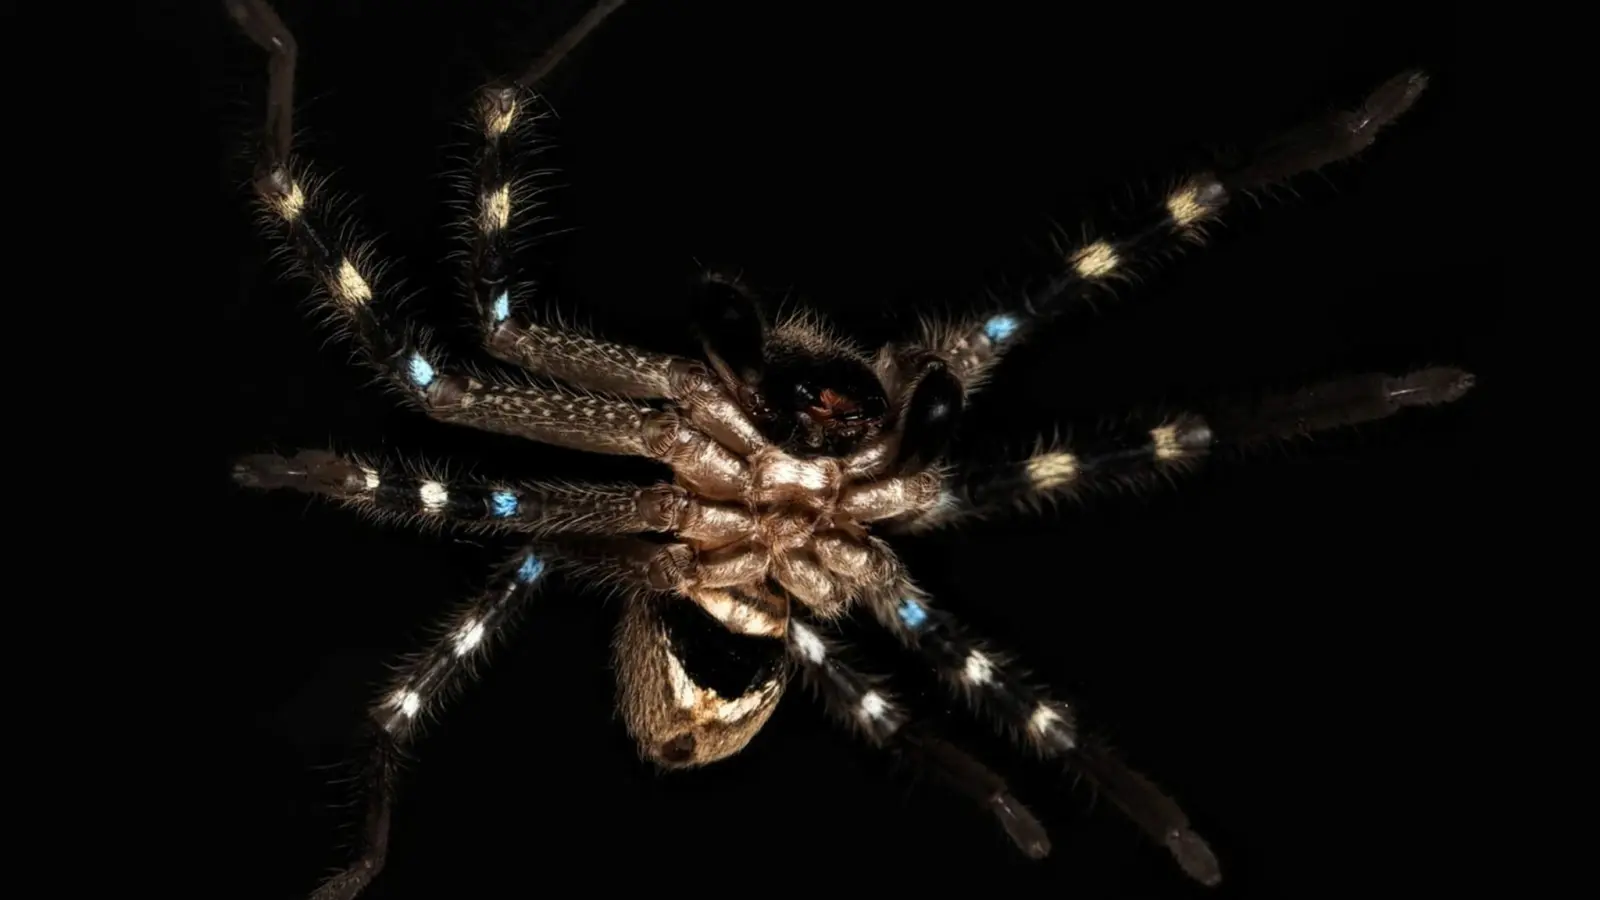 Die undatierte Aufnahme zeigt eine Huntsman-Spinne (Riesenkrabbenspinne), die sich wie ein Krieger tarnt und zur Gattung Neosparassus gehört. (Foto: J Schubert/AAP/dpa/Handout)